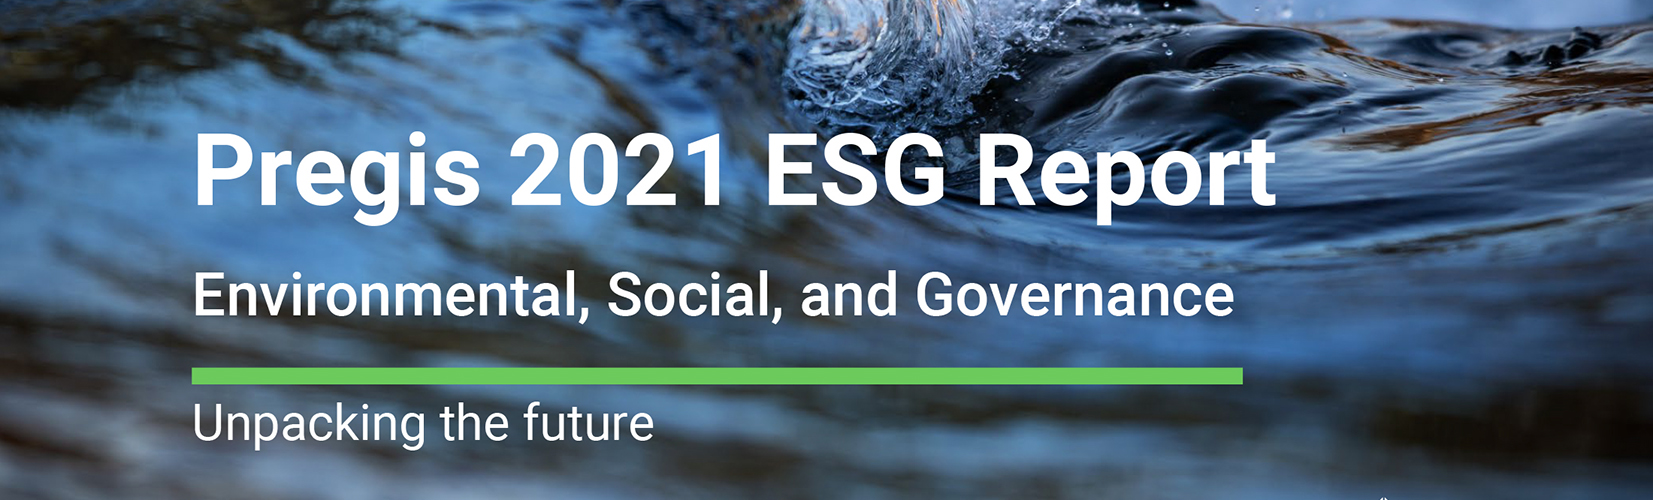 2021 Pregis ESG Report